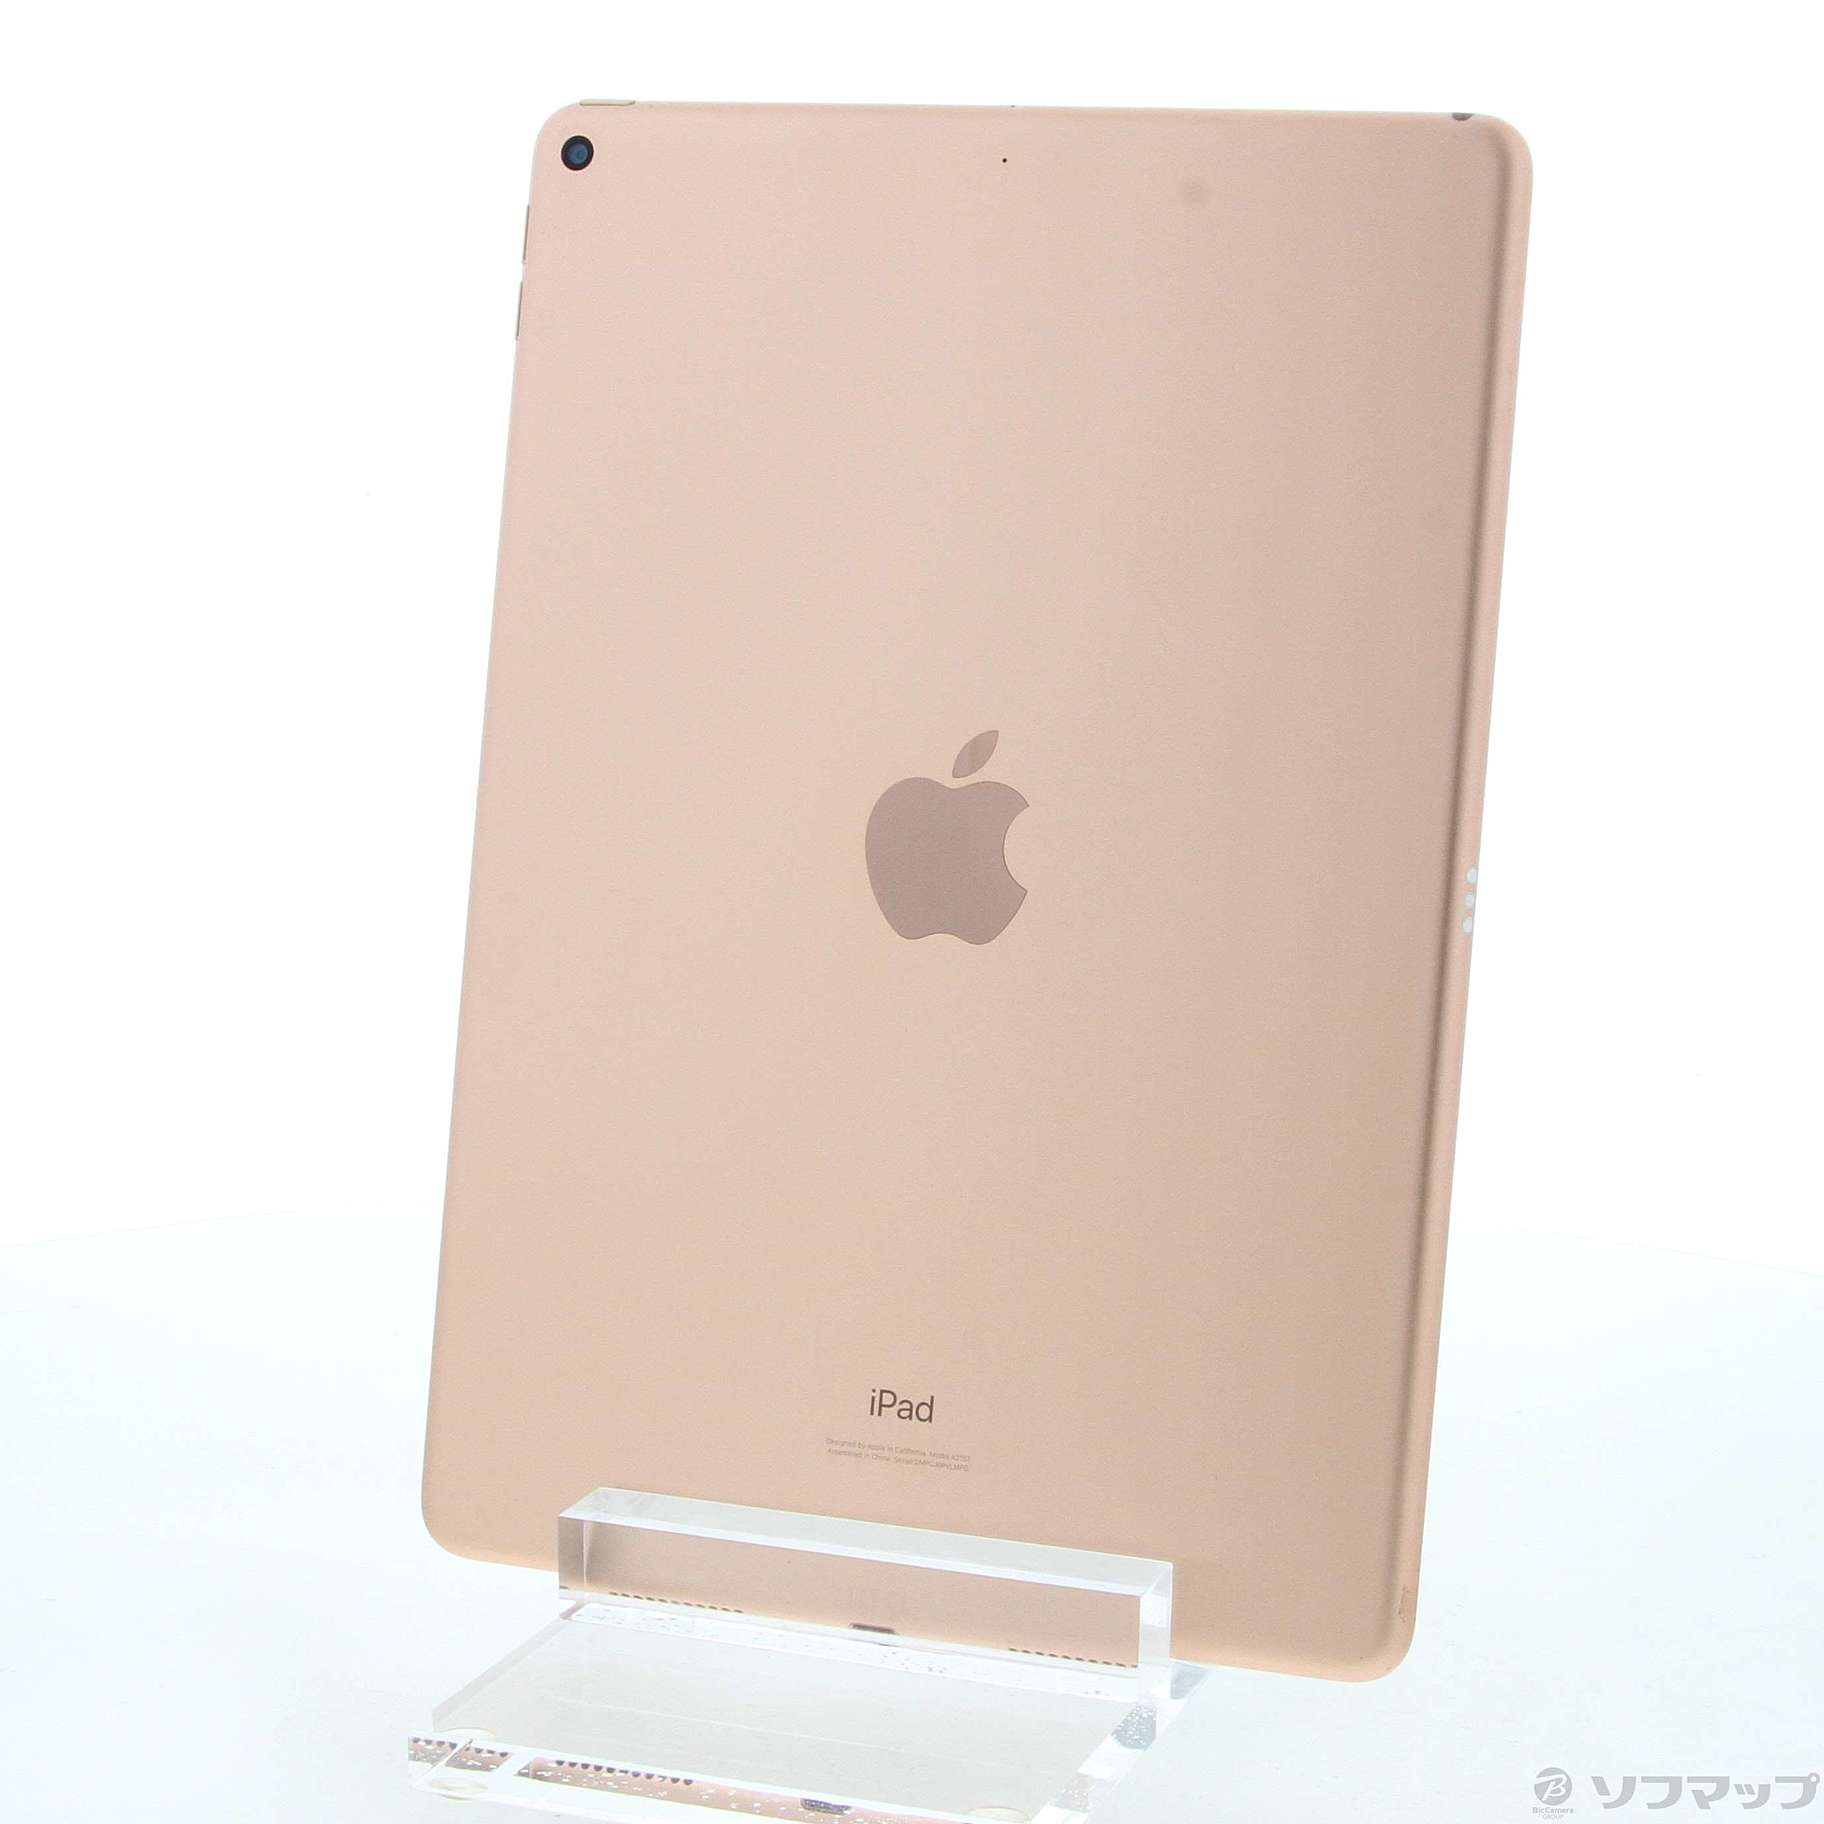 【新品未使用】iPad Air 64GB ゴールド  MUUL2J-A